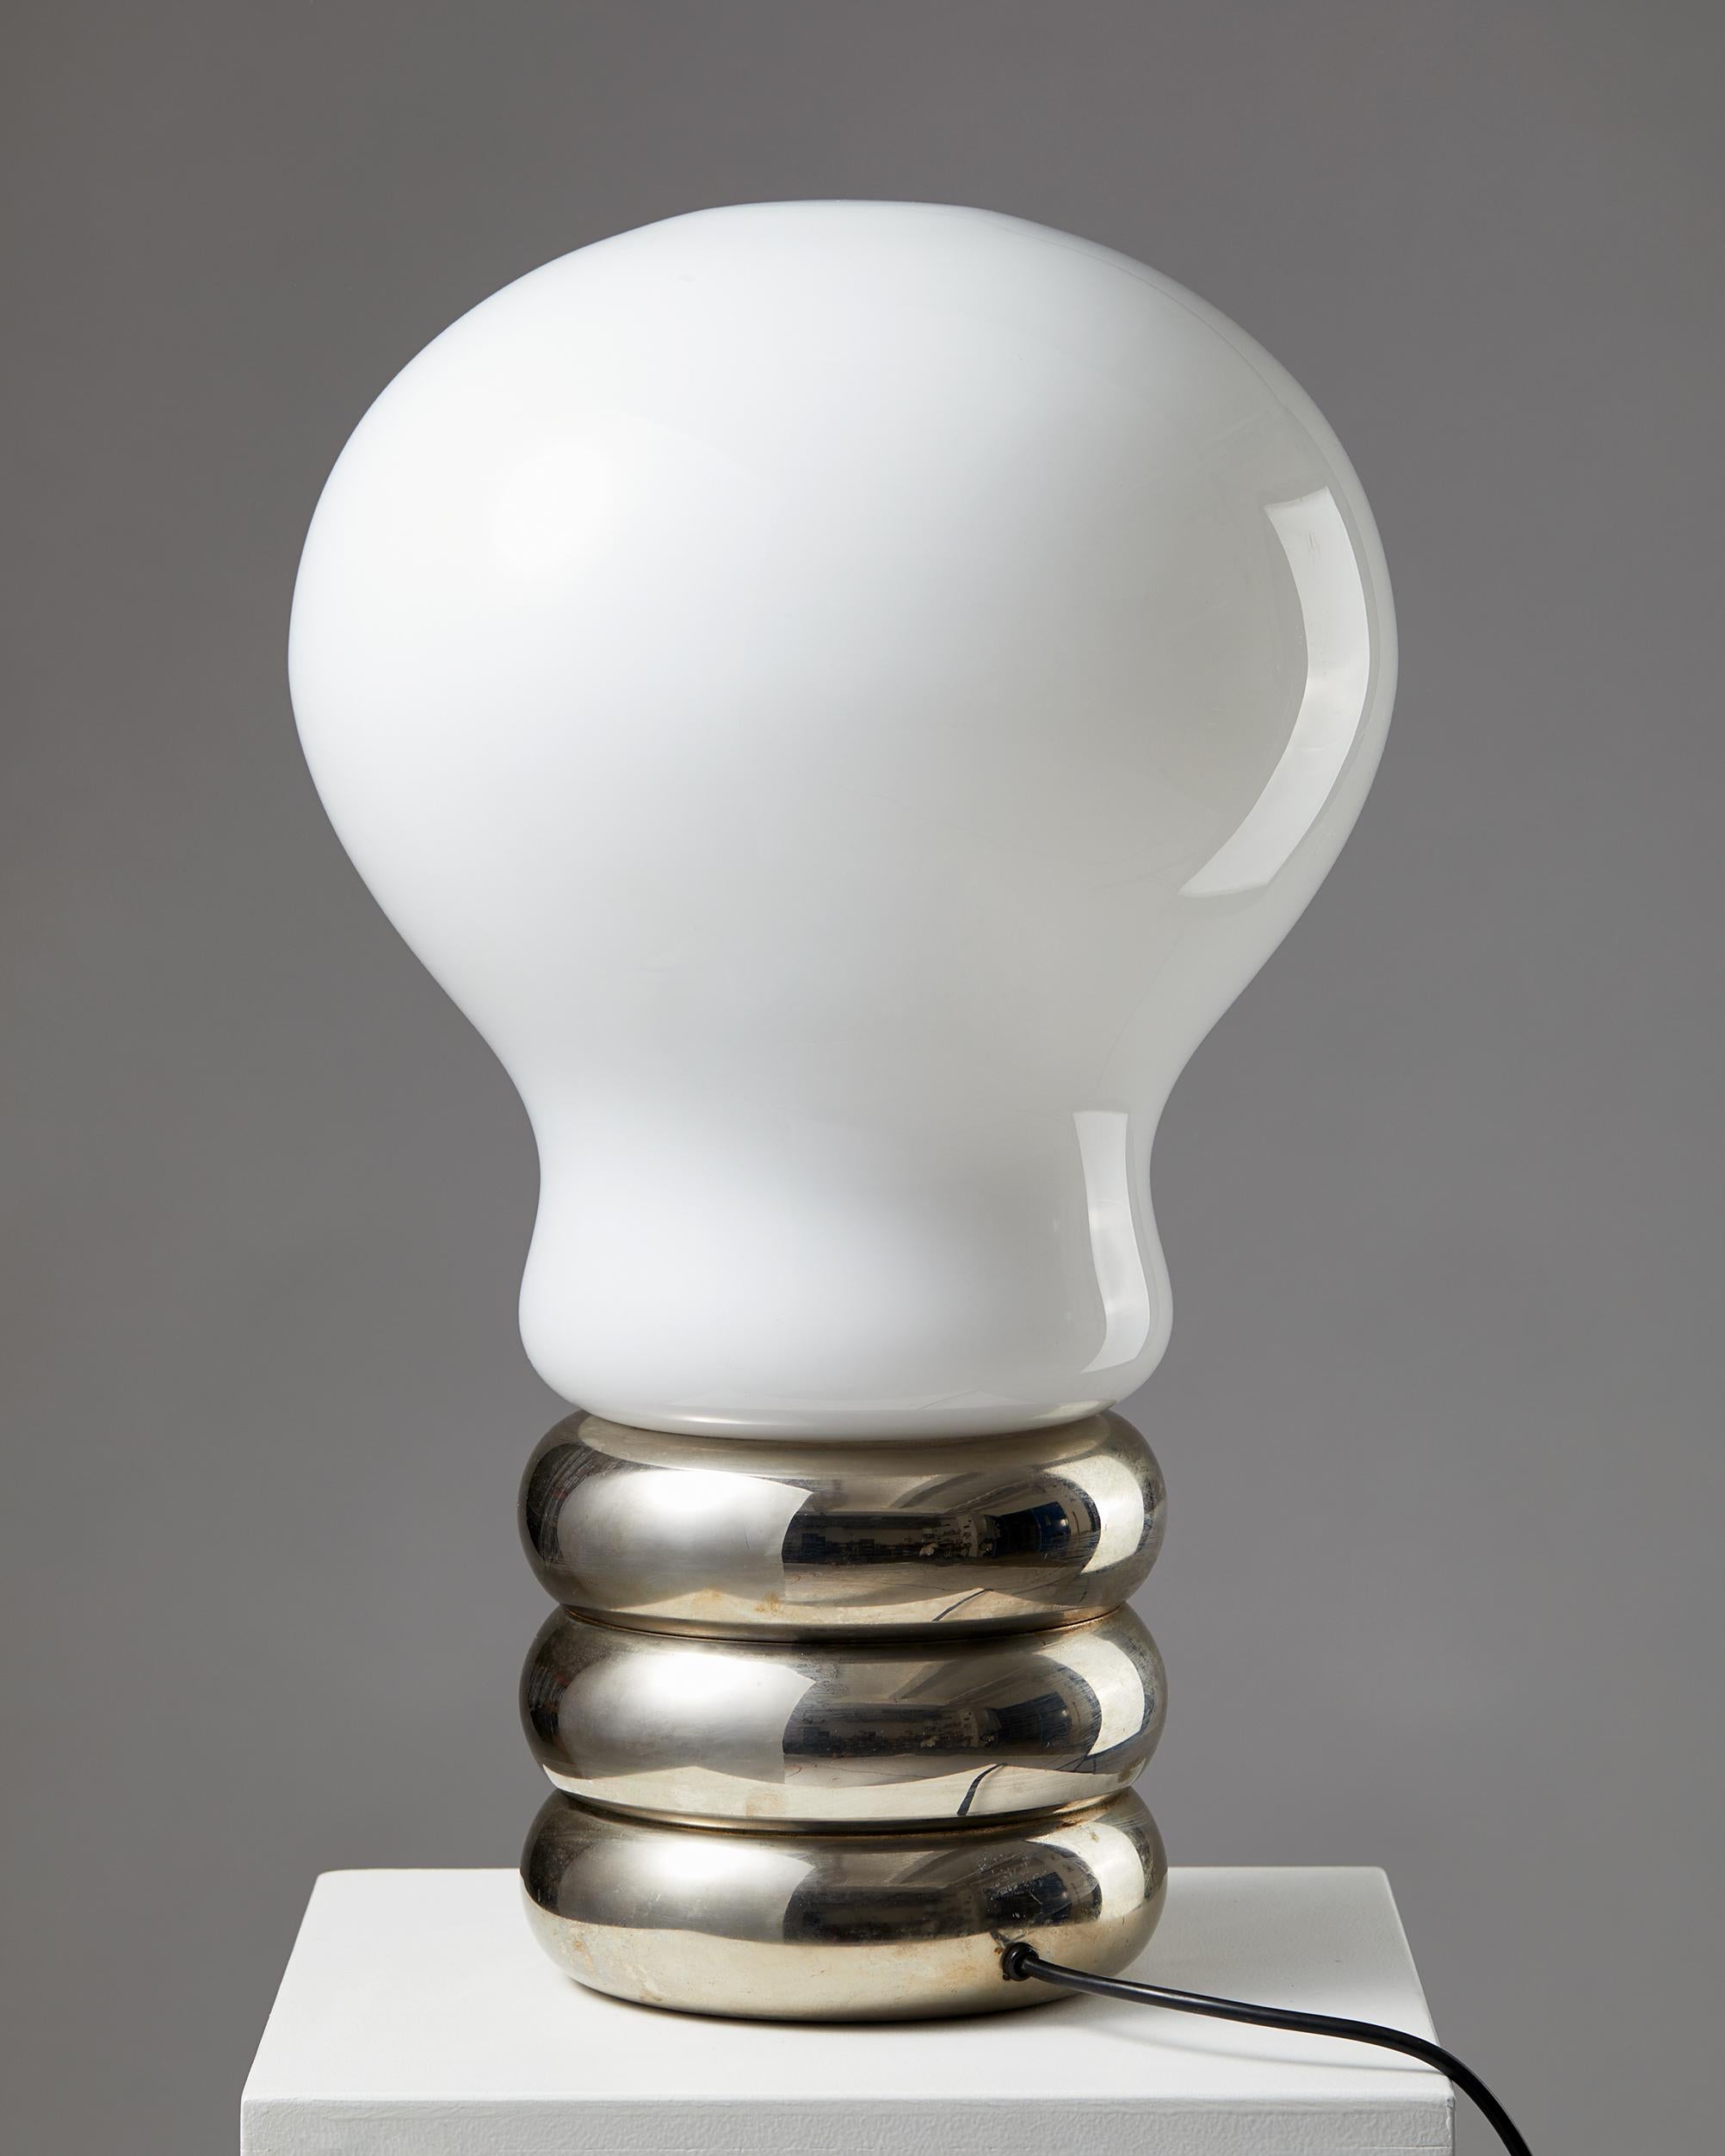 giant light bulb table lamp